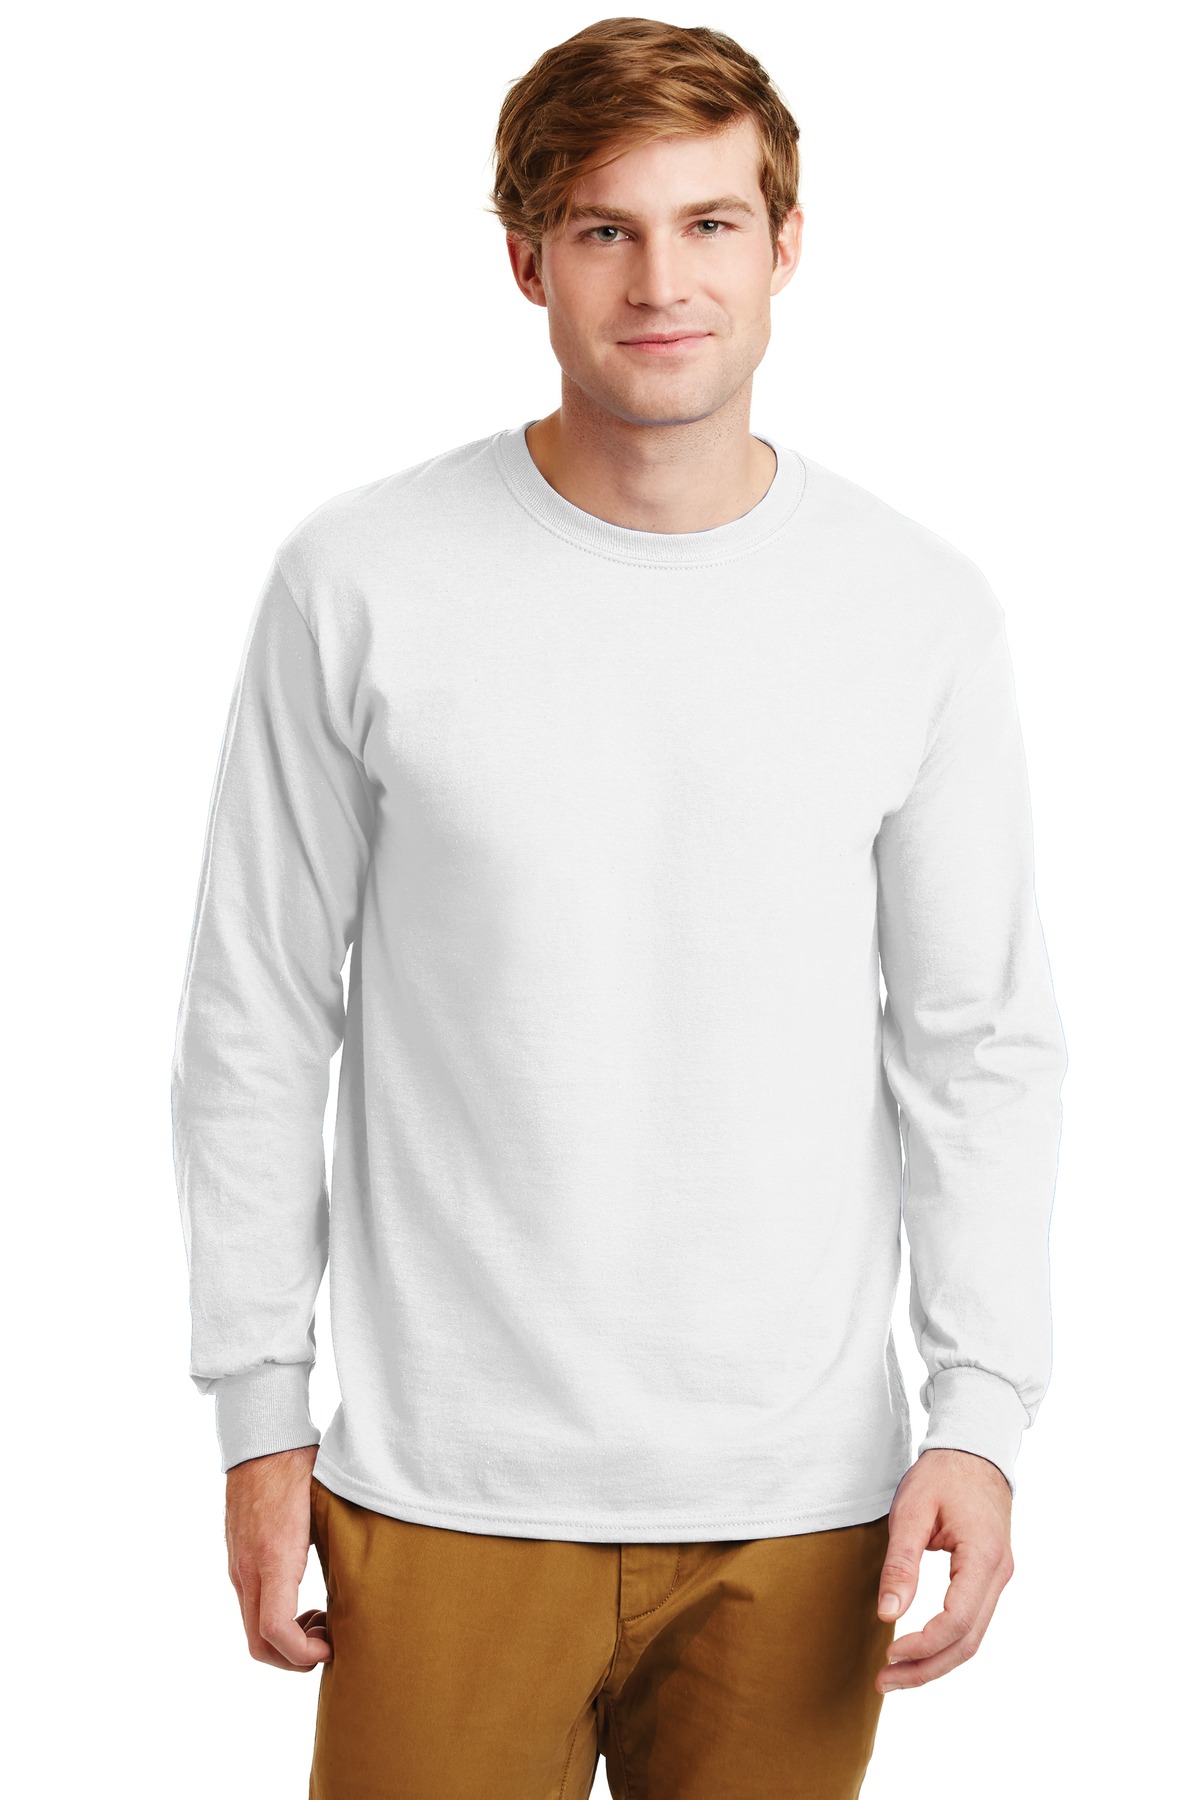 Gildan - Ultra Cotton 100% Cotton Long Sleeve T-Shirt. G2400